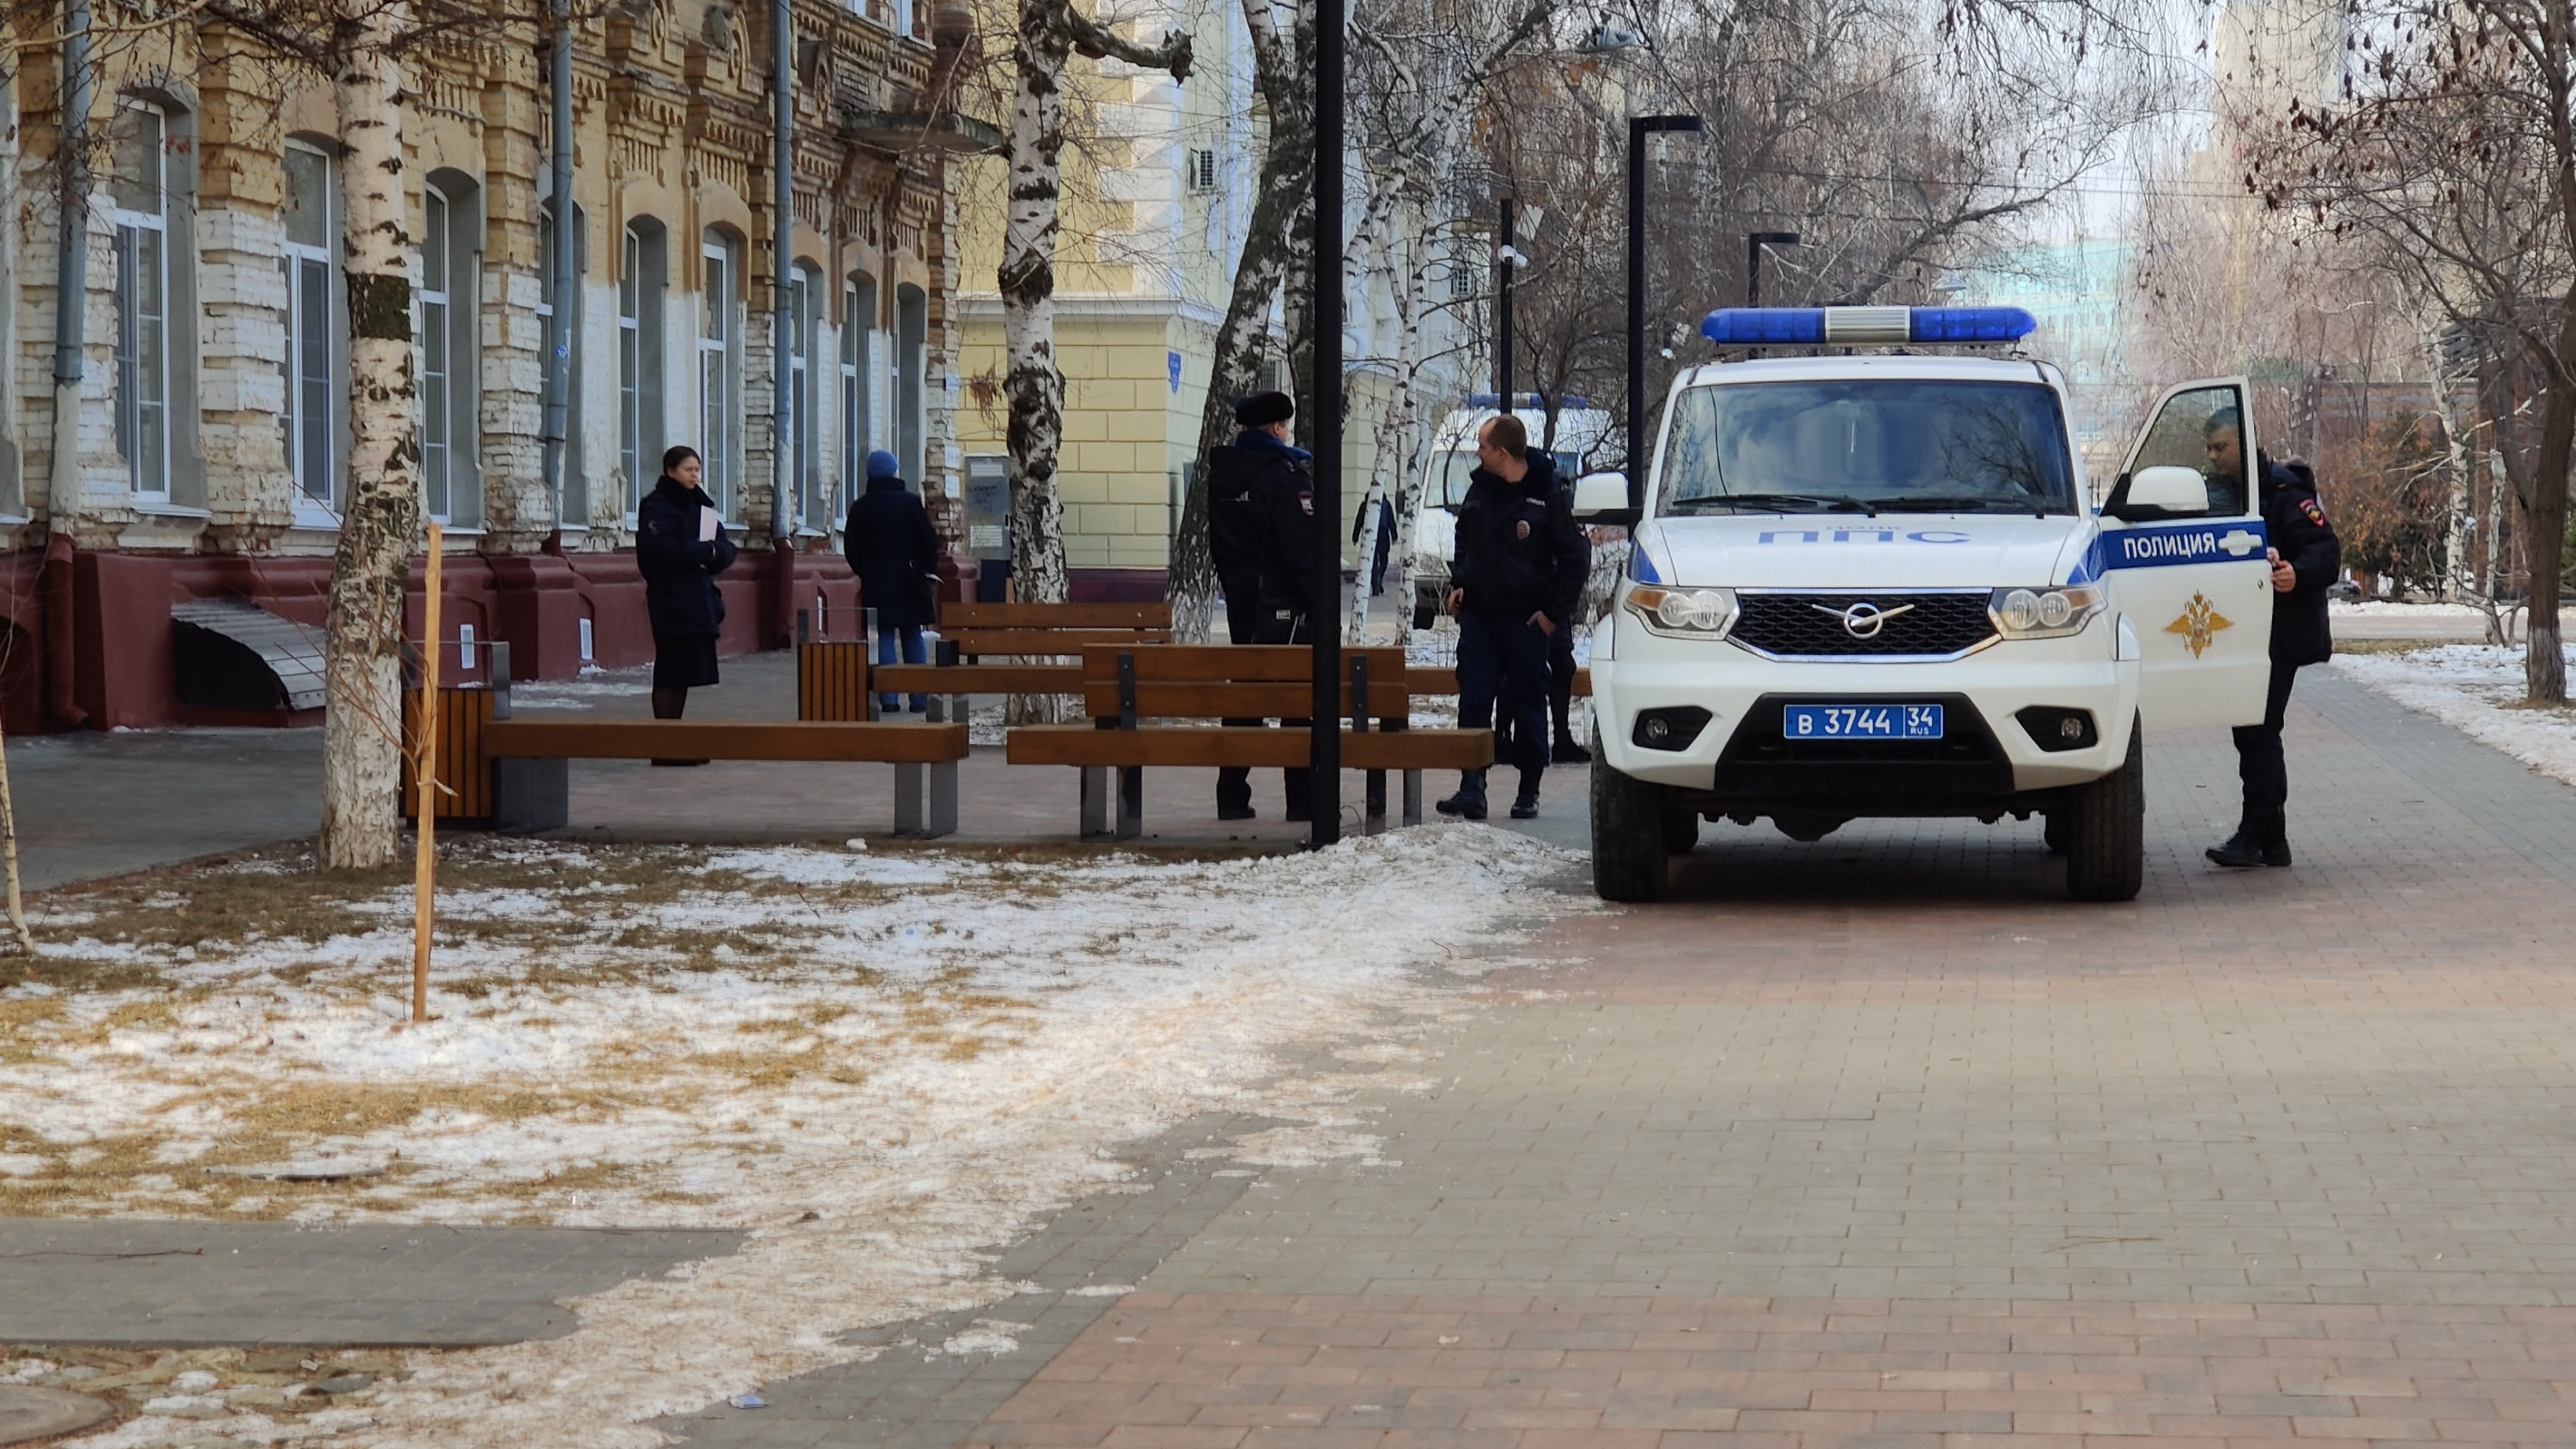 «Я приду и сделаю кое-что плохое»: в центре Волгограда полиция экстренно проверяла школу